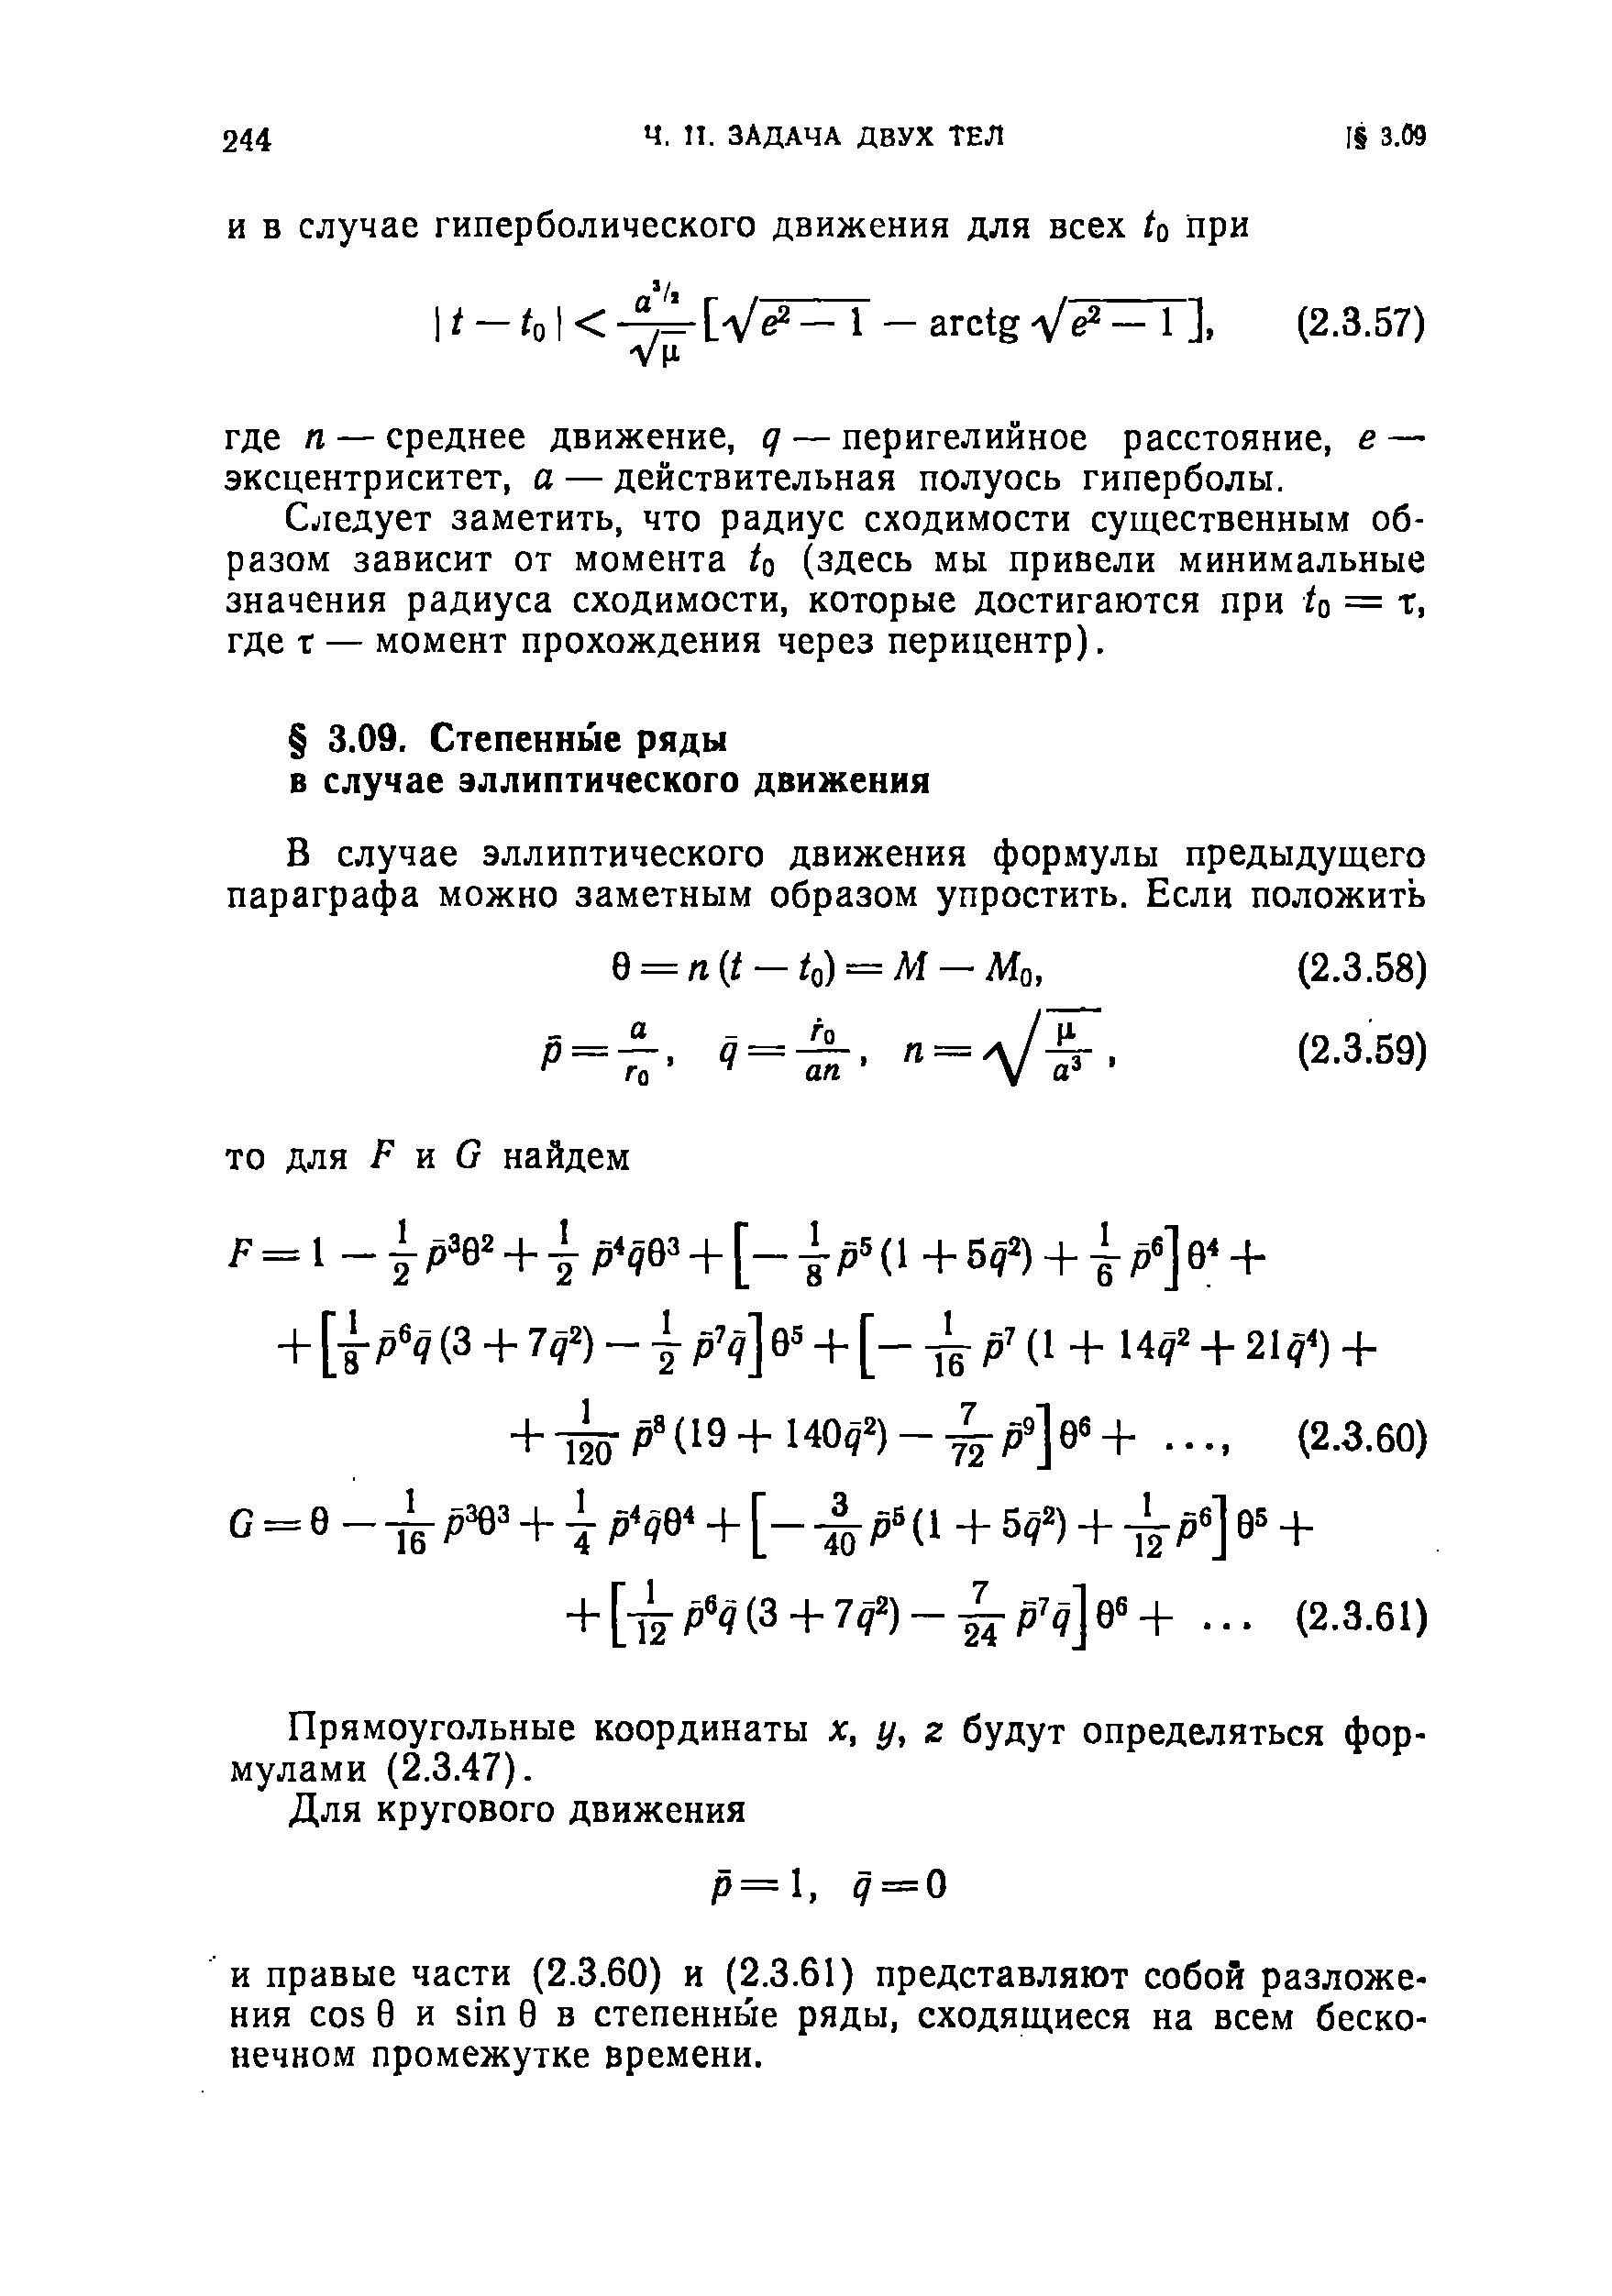 Прямоугольные координаты х, у, г будут определяться формулами (2.3.47).
